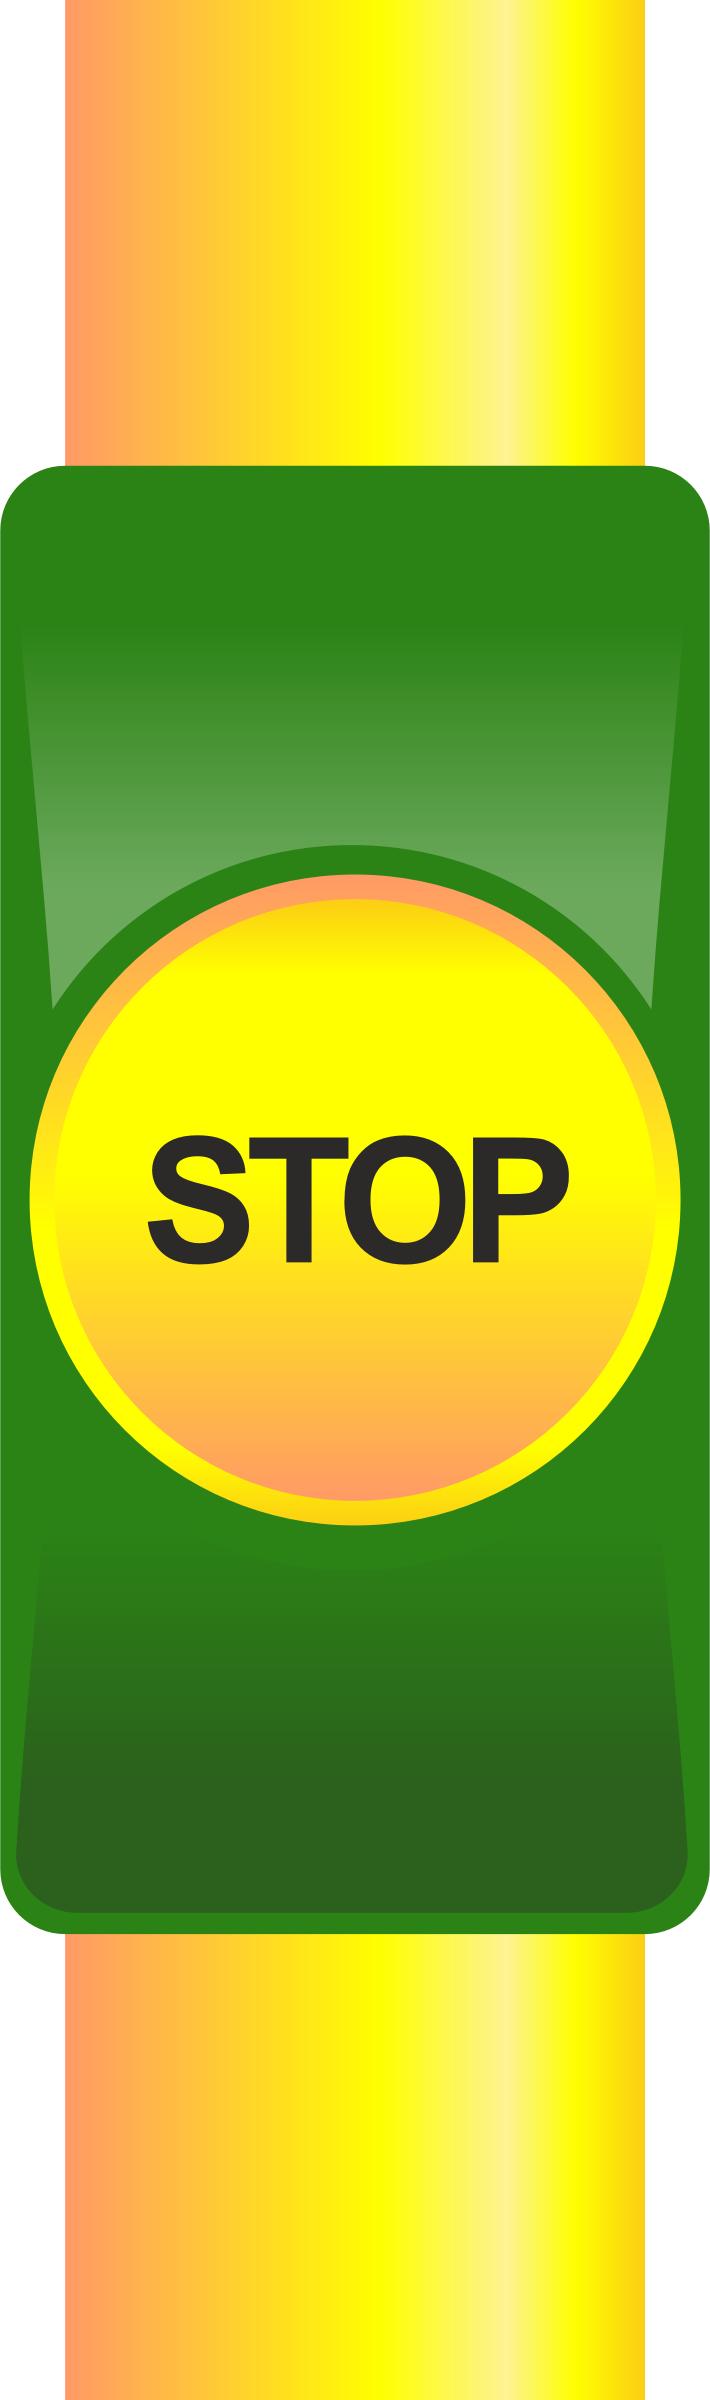 Public transport stop button png